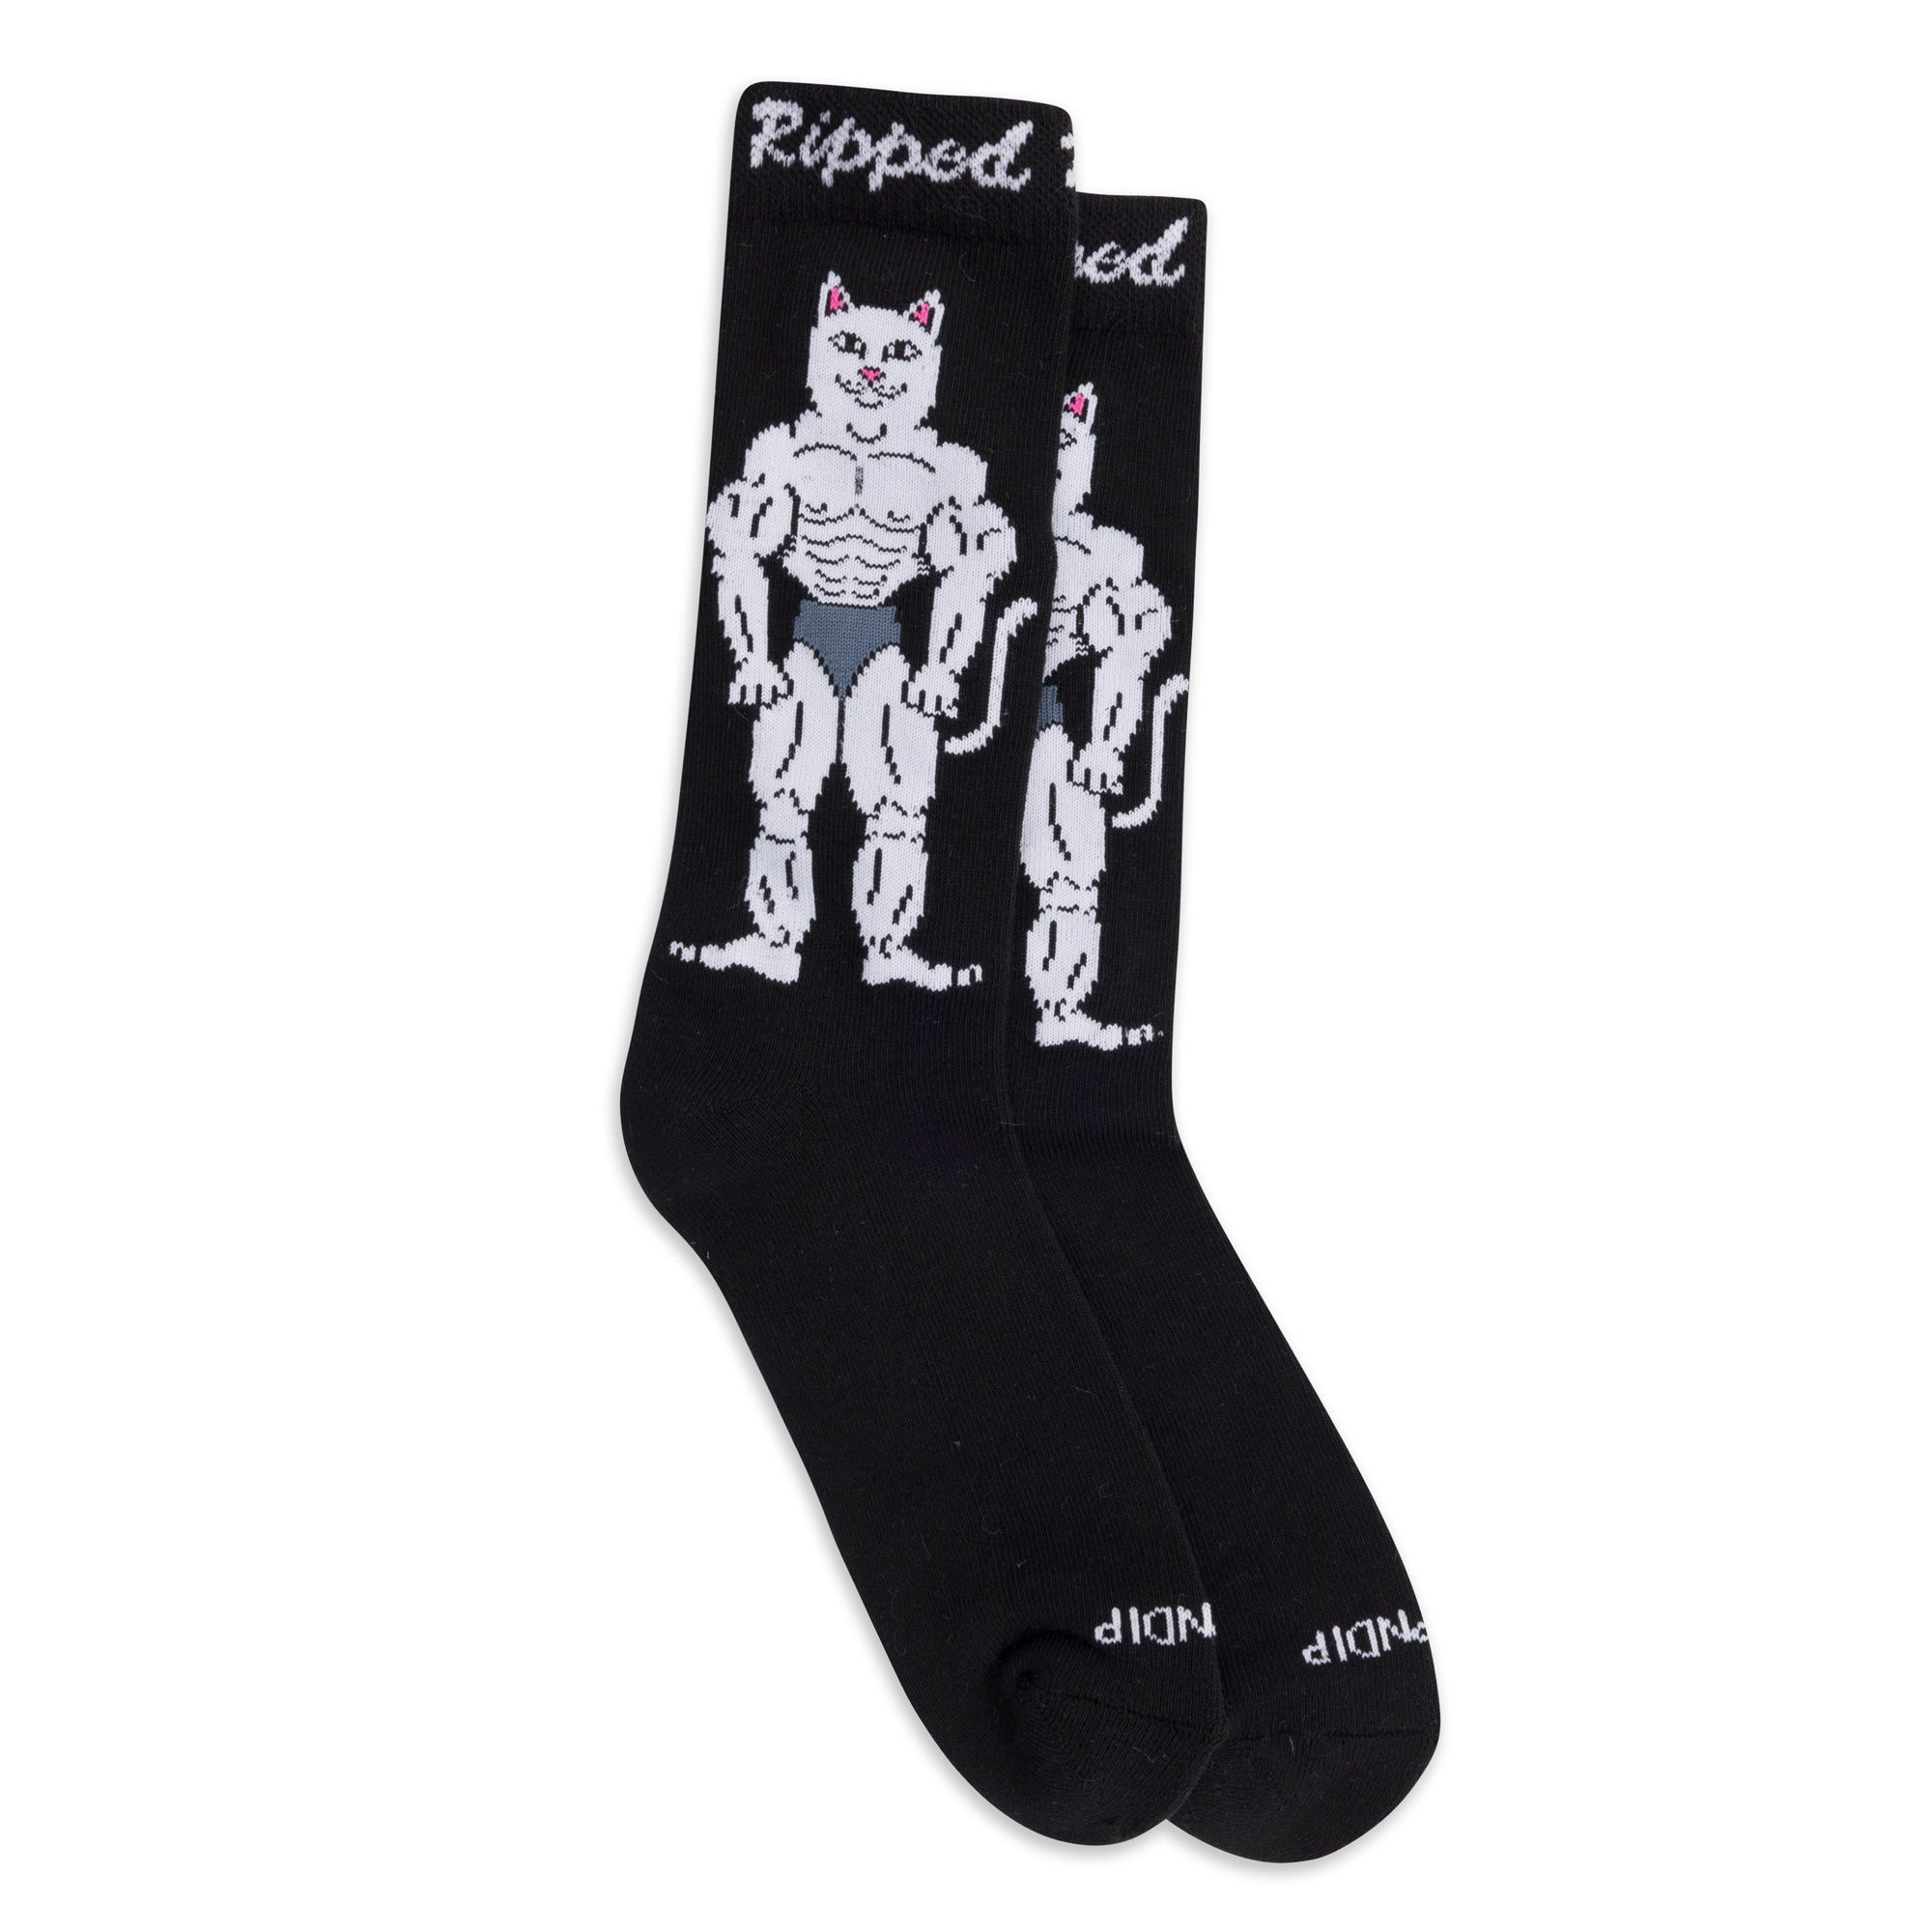 Socks - Mens And Womens - Ripndip.com – RIPNDIP